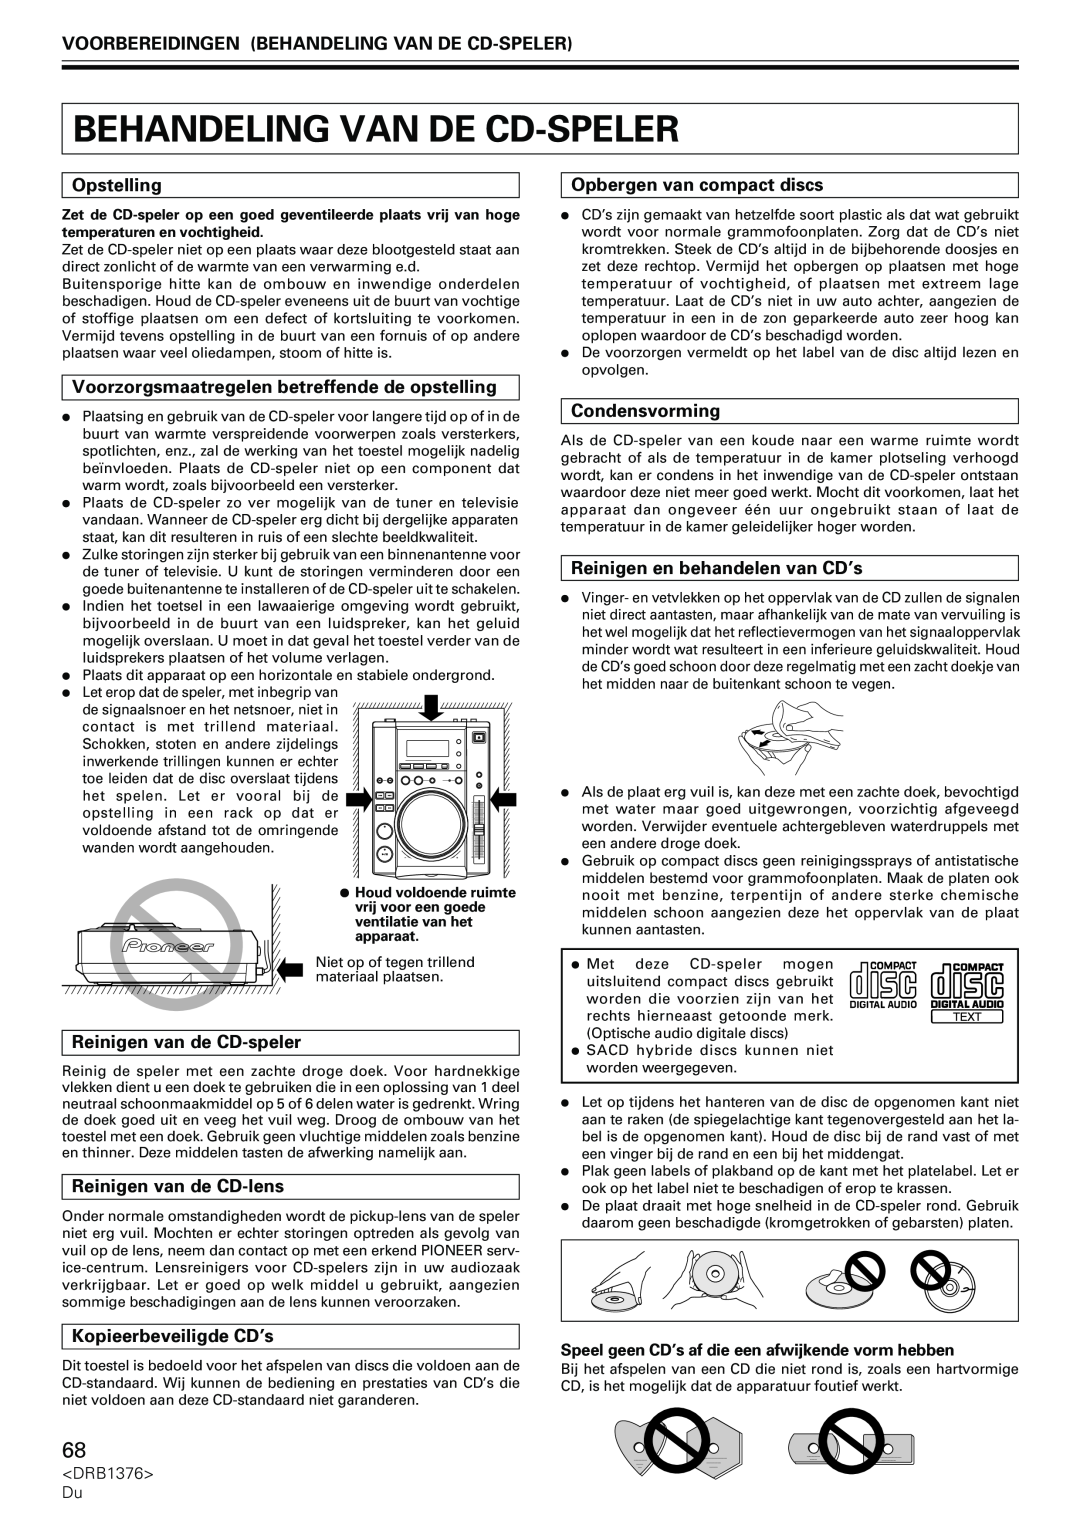 Pioneer CDJ-200 Voorbereidingen Behandeling Van De Cd-Speler, Opstelling, Opbergen van compact discs, Condensvorming 